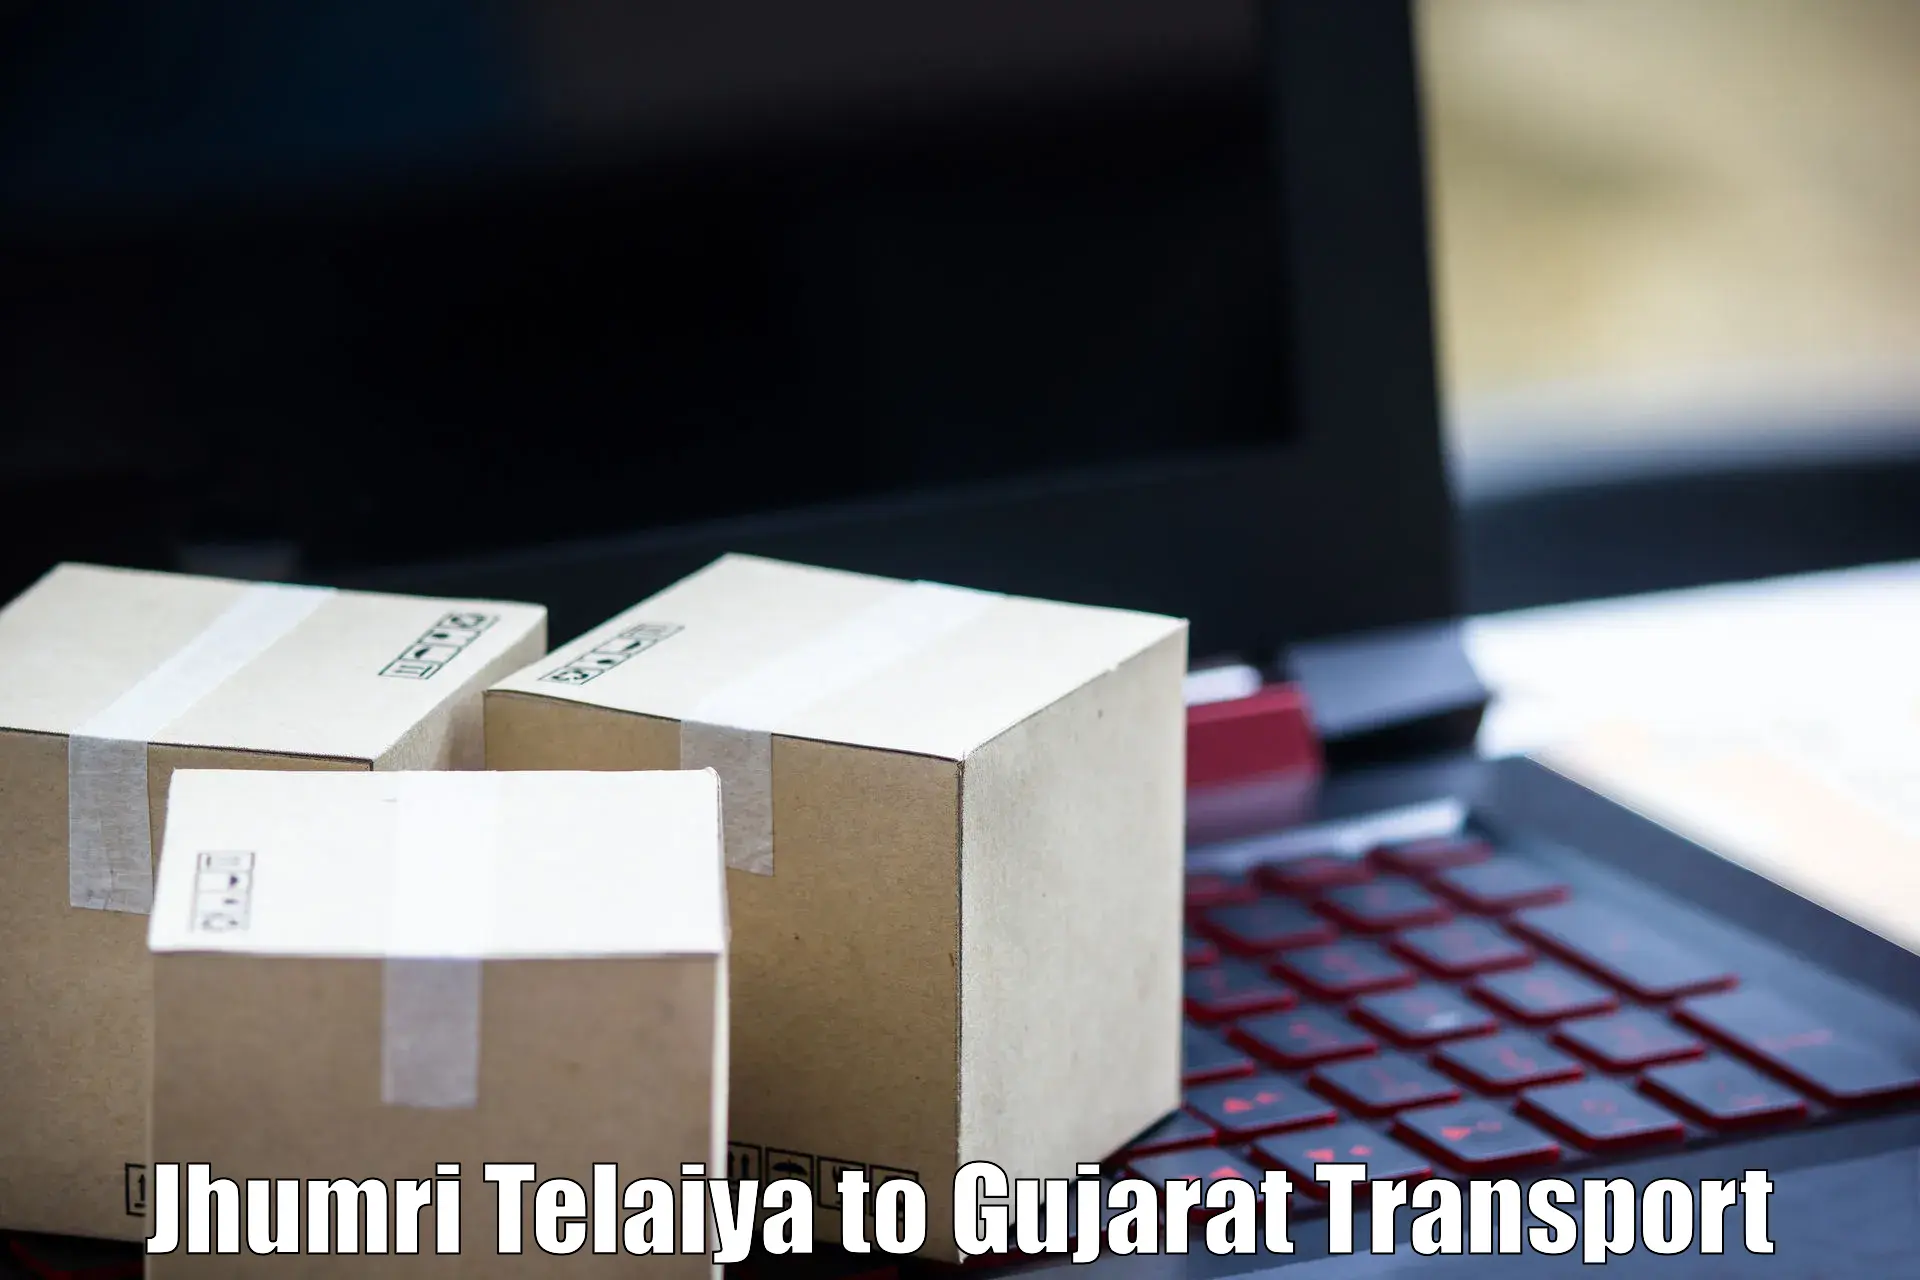 Shipping services Jhumri Telaiya to Rumkitalav